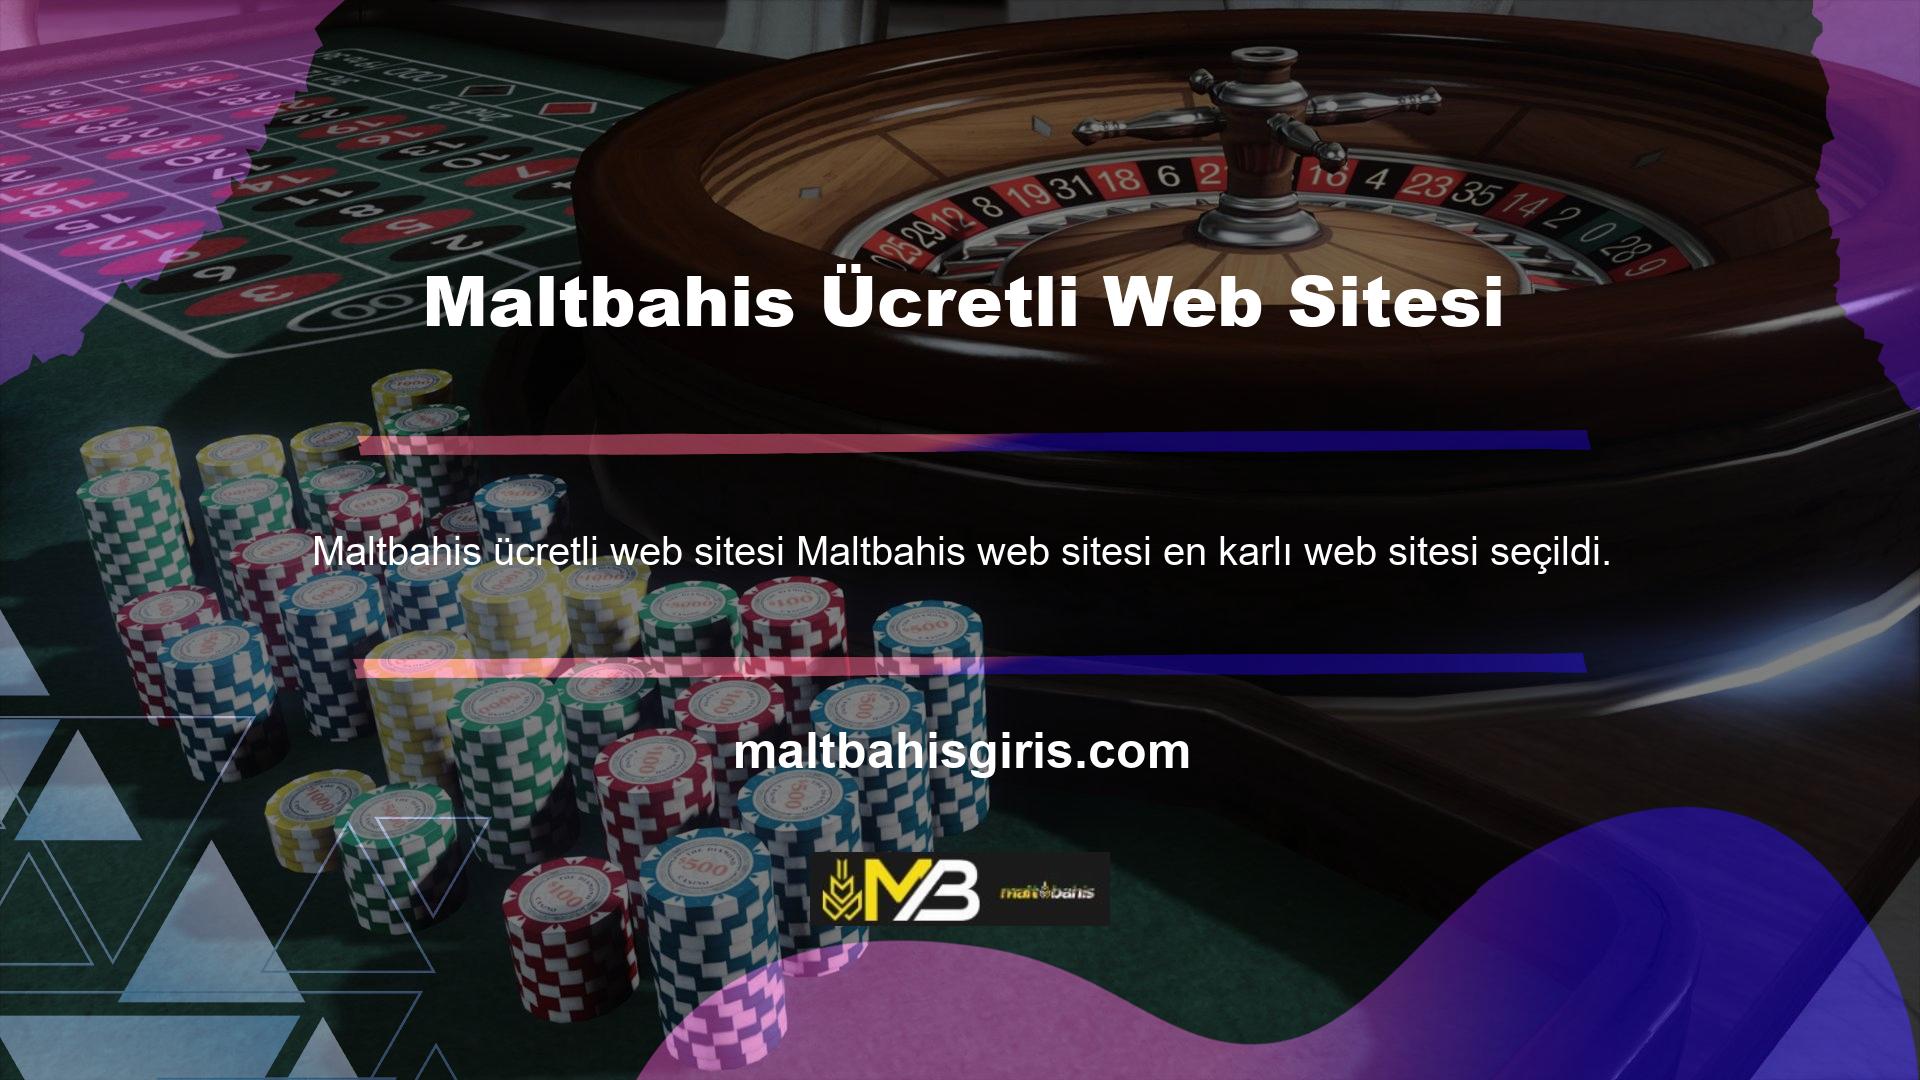 Yabancı casino sitelerinin payına ilişkin araştırma ve bilgilere göre, tüm casino grupları arasında Maltbahis web sitesi, üyelerine en fazla fayda sağlayan ve poker oyunları da dahil olmak üzere çok çeşitli bahis seçenekleri sunan sitedir